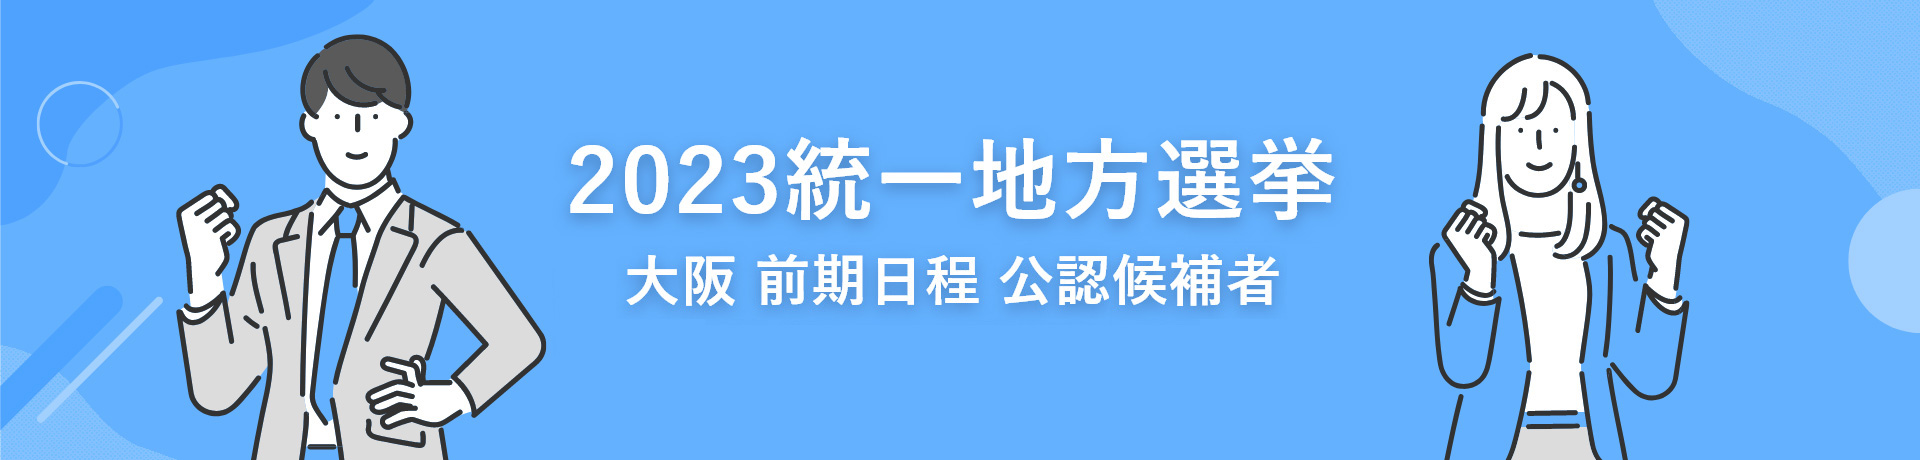 2023統一地方選挙 大阪 前期日程 公認予定候補者